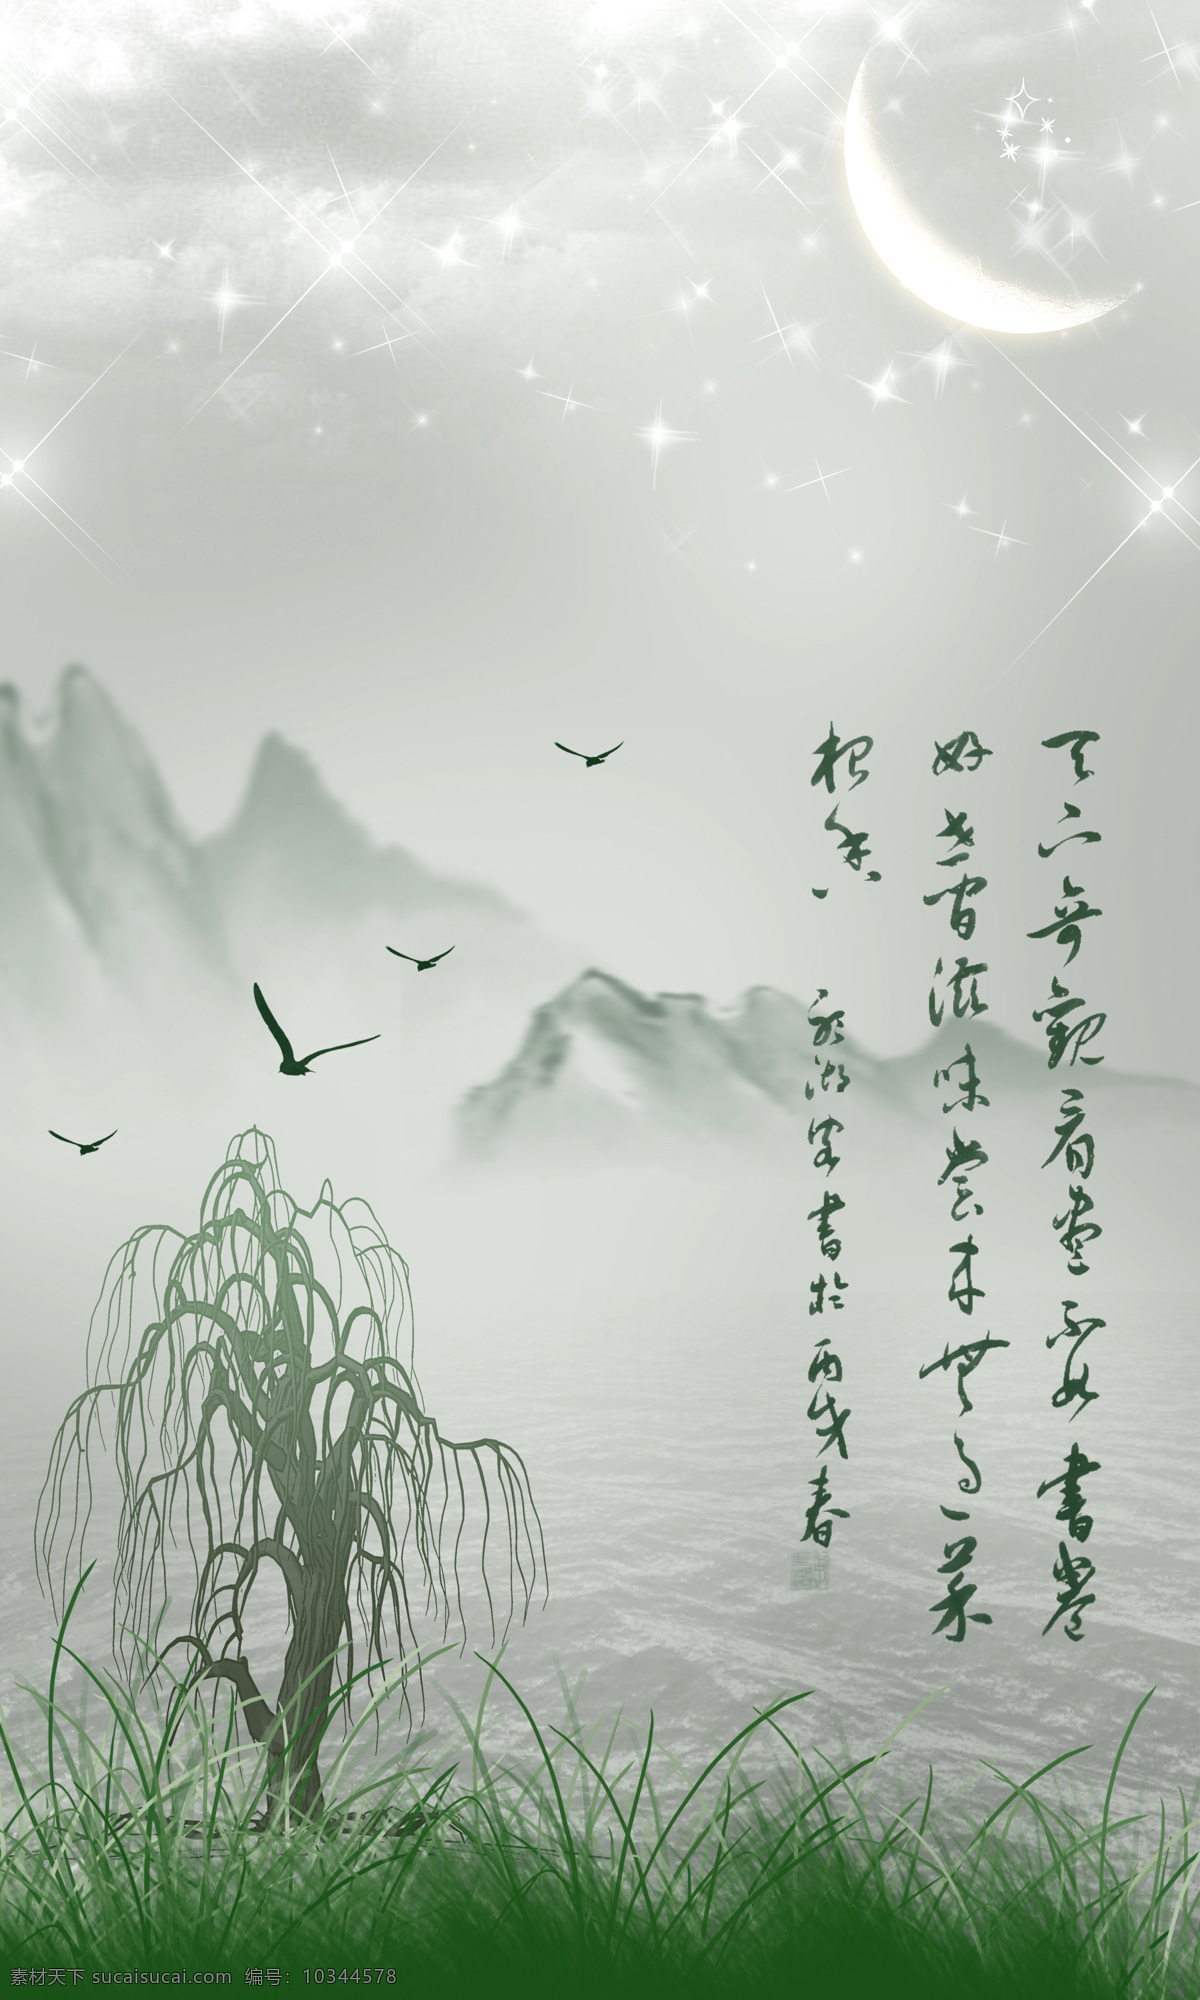 中式 风吹 不 寒 杨柳风 3d渲染 效果图 背景墙 杨柳树 大雁 月亮 瓷砖